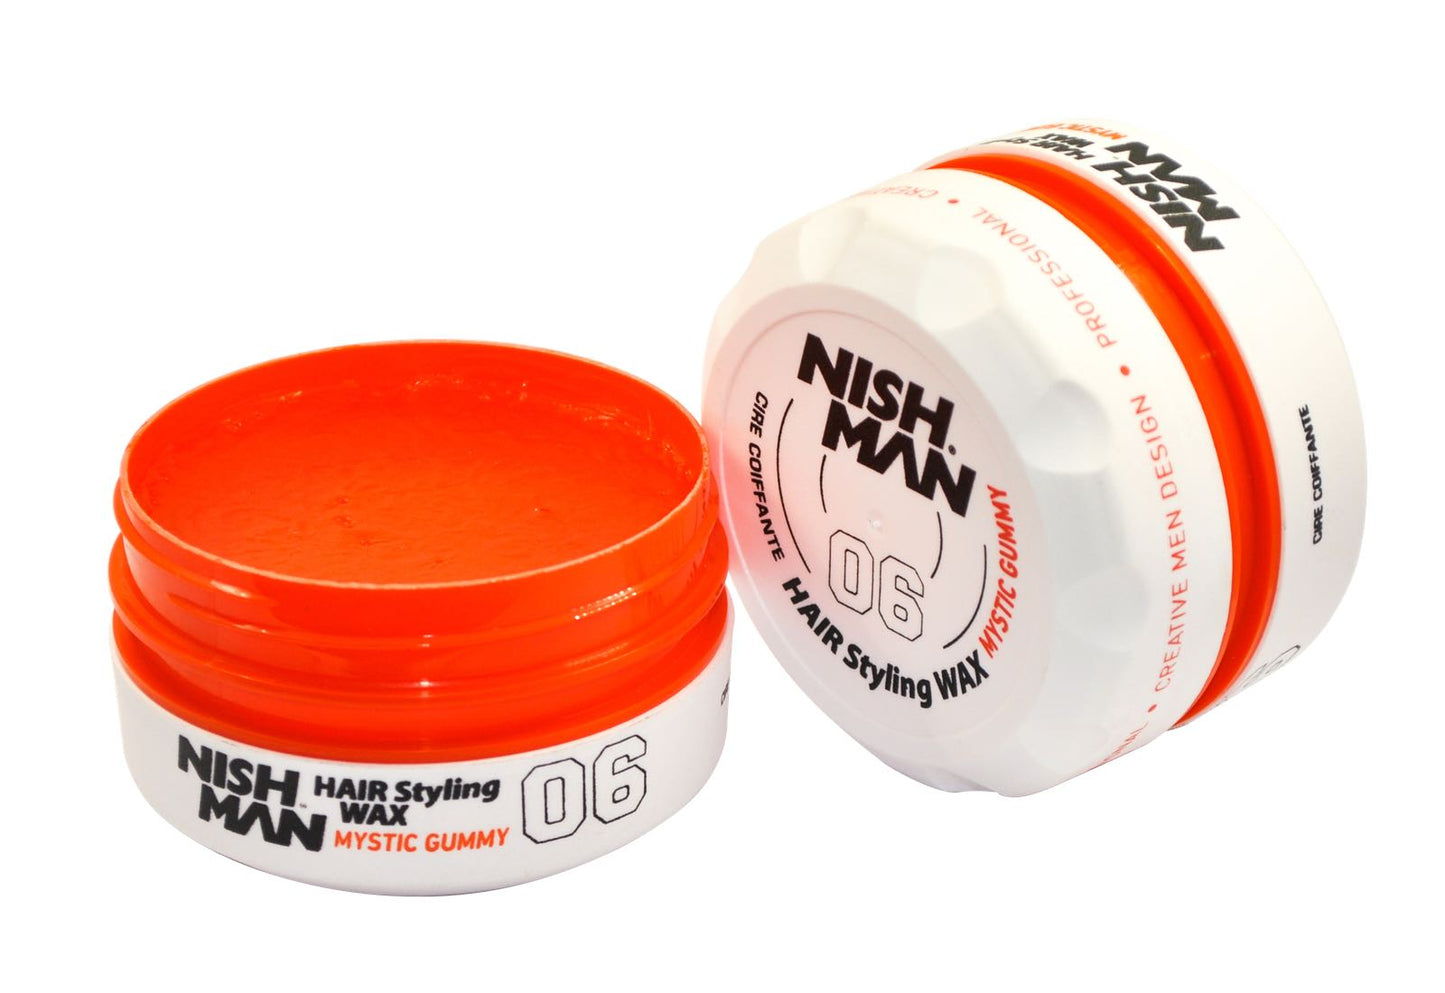 Nishman Hair Styling Mystic Gummy Wax 06